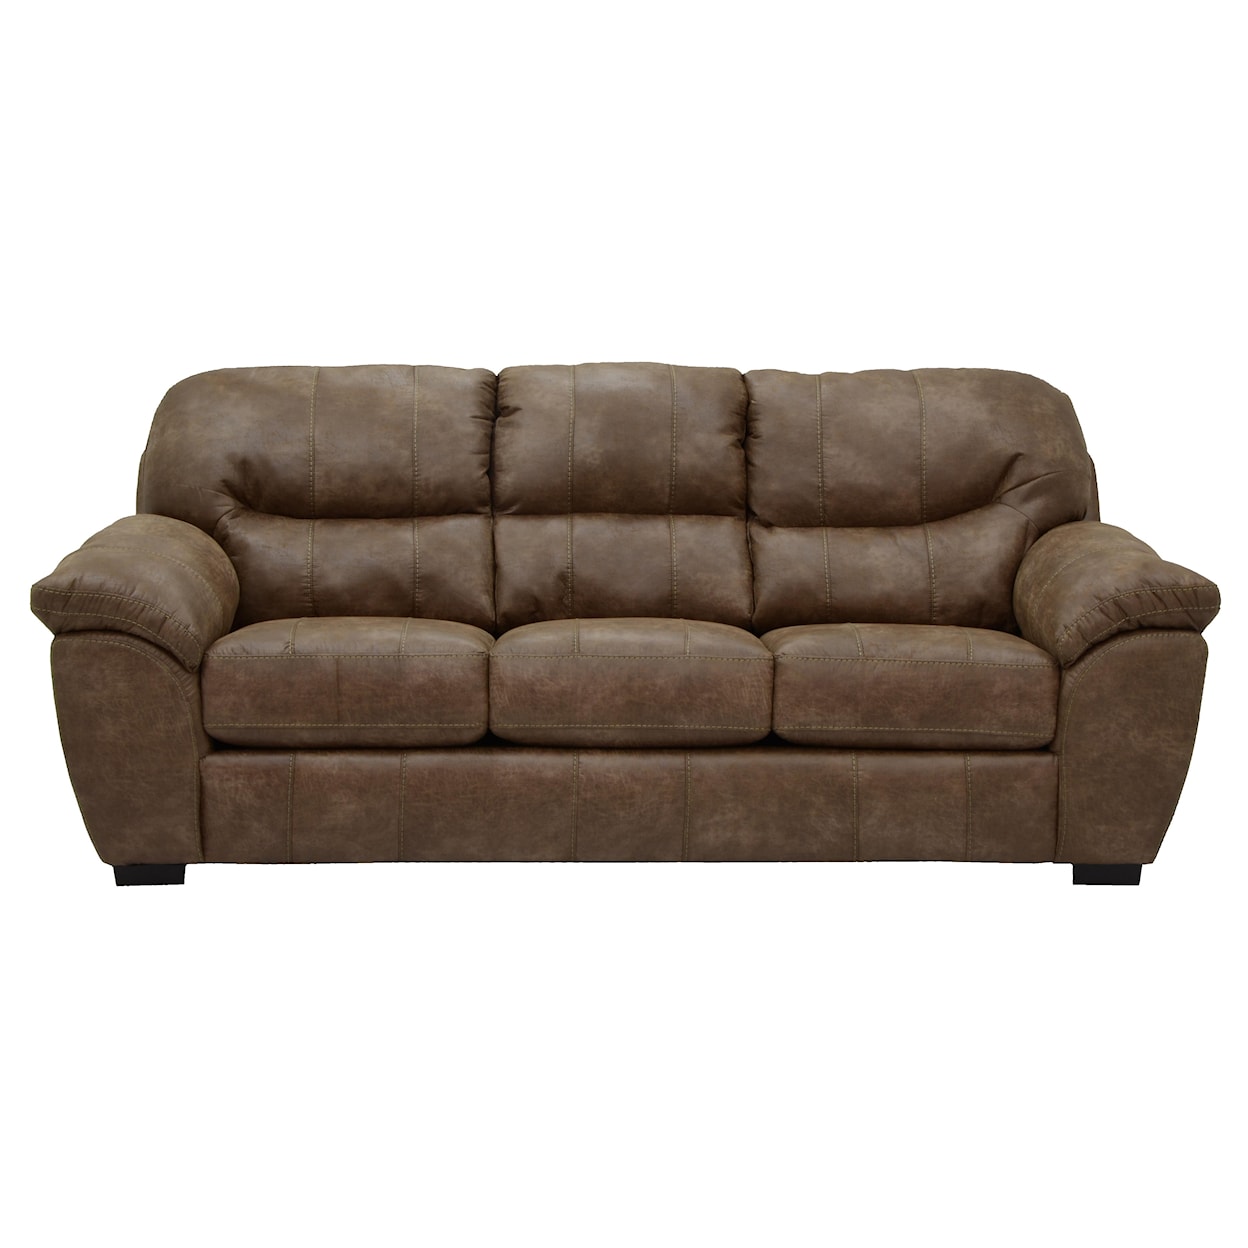 Jackson Furniture 4453 Grant Sleeper Sofa